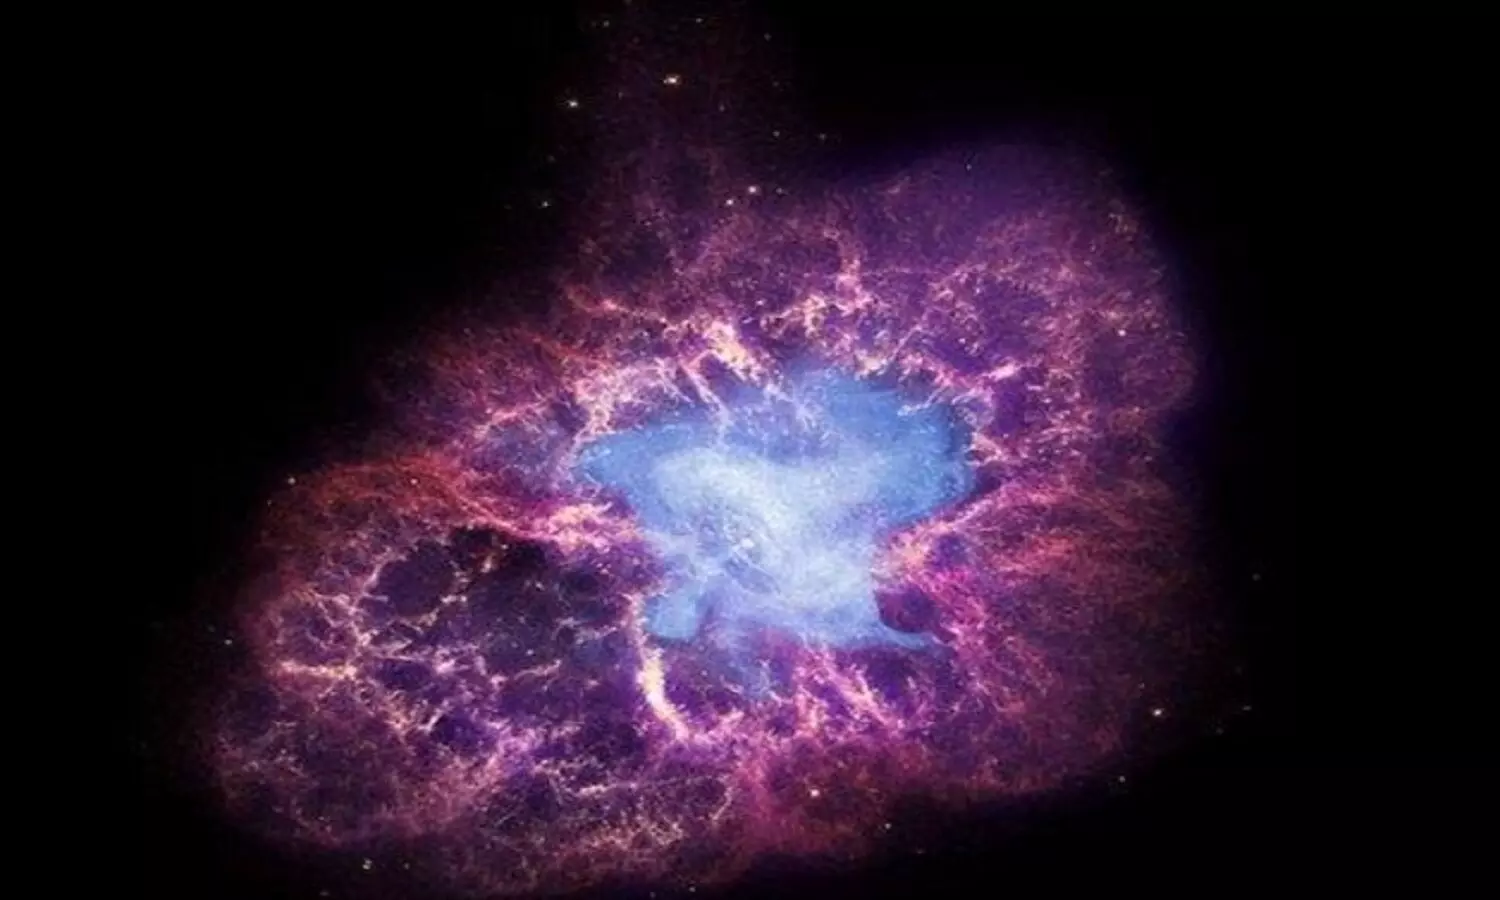 वैज्ञानिकों का चमत्कारी अविष्कार: लैब में बनाया Supernova, जिससे हुआ था अपने सौर्यमंडल का निर्माण